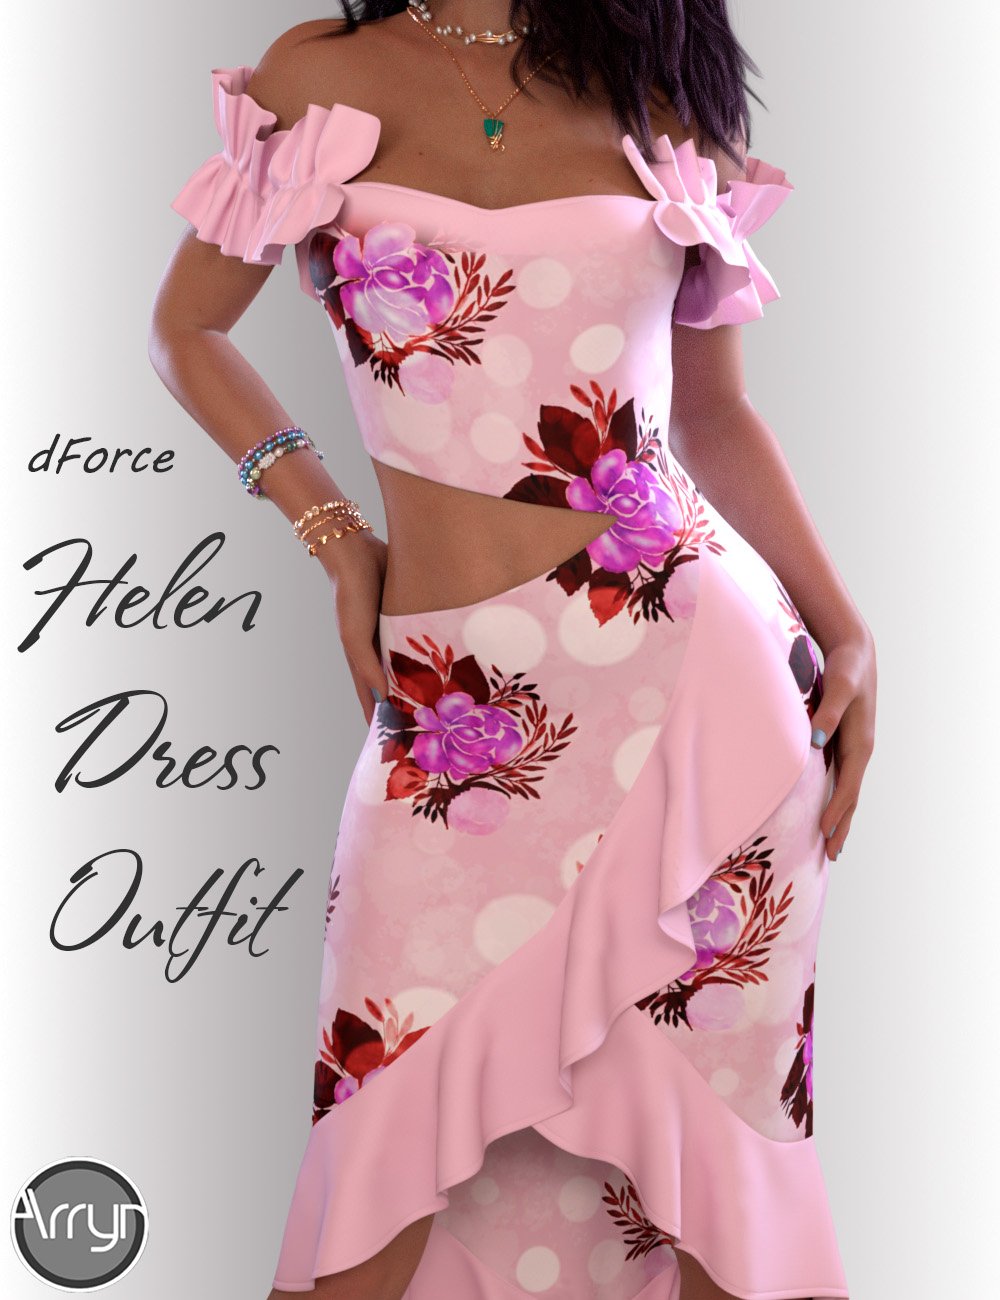 dForce Helen Cocktail Dress Outfit for Genesis 8 Female(s) by: OnnelArryn, 3D Models by Daz 3D